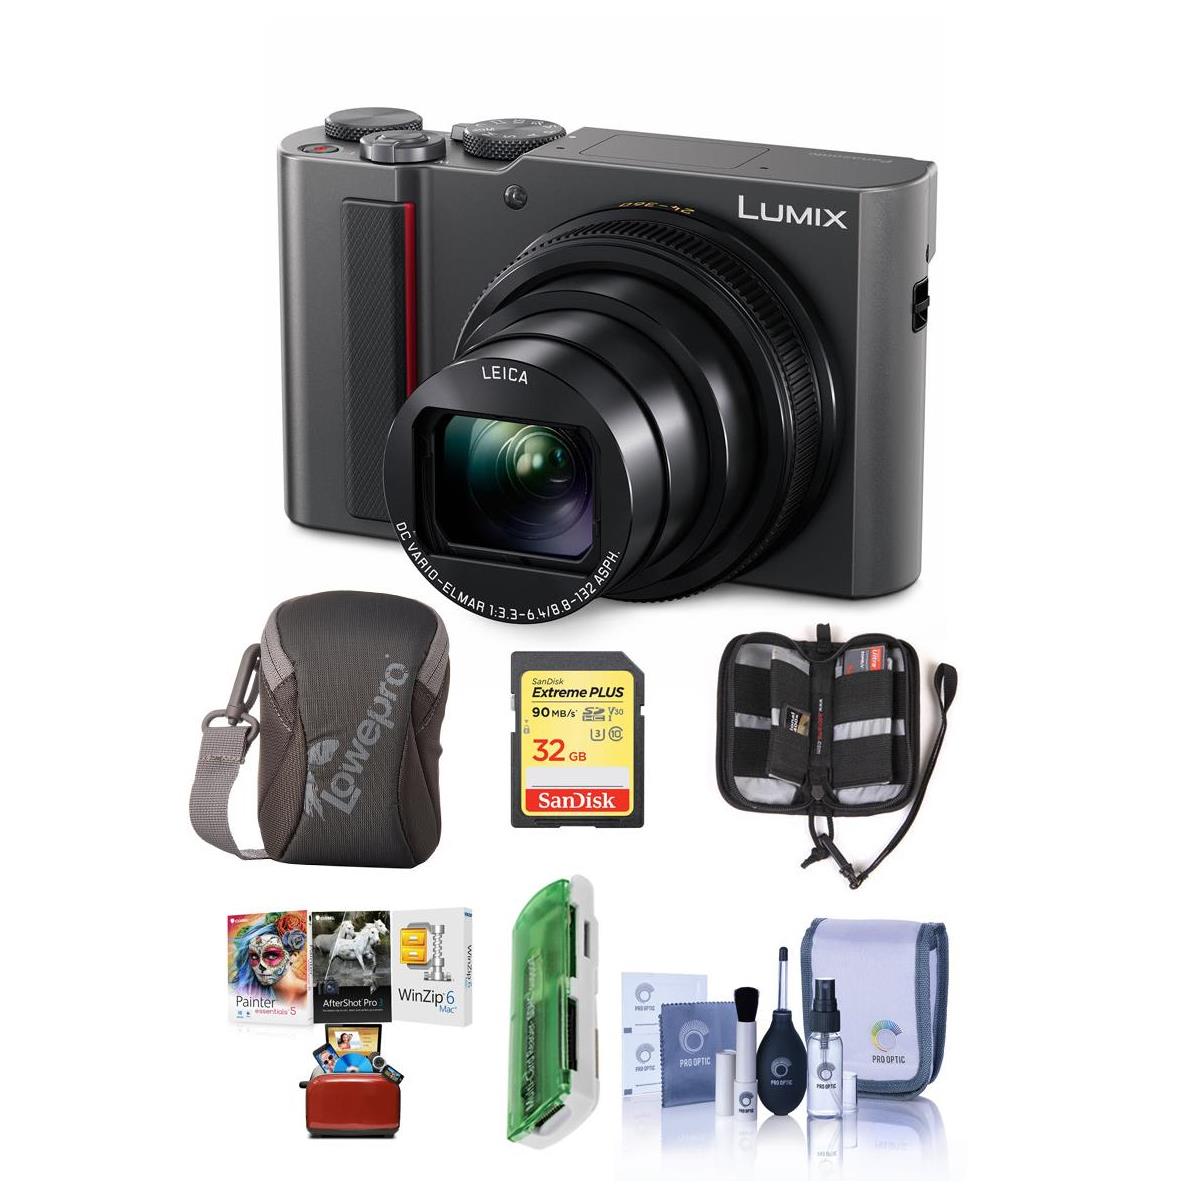 Panasonic Lumix DMC-ZS200 Digital Camera Silver With Free Mac Accessory Bundle